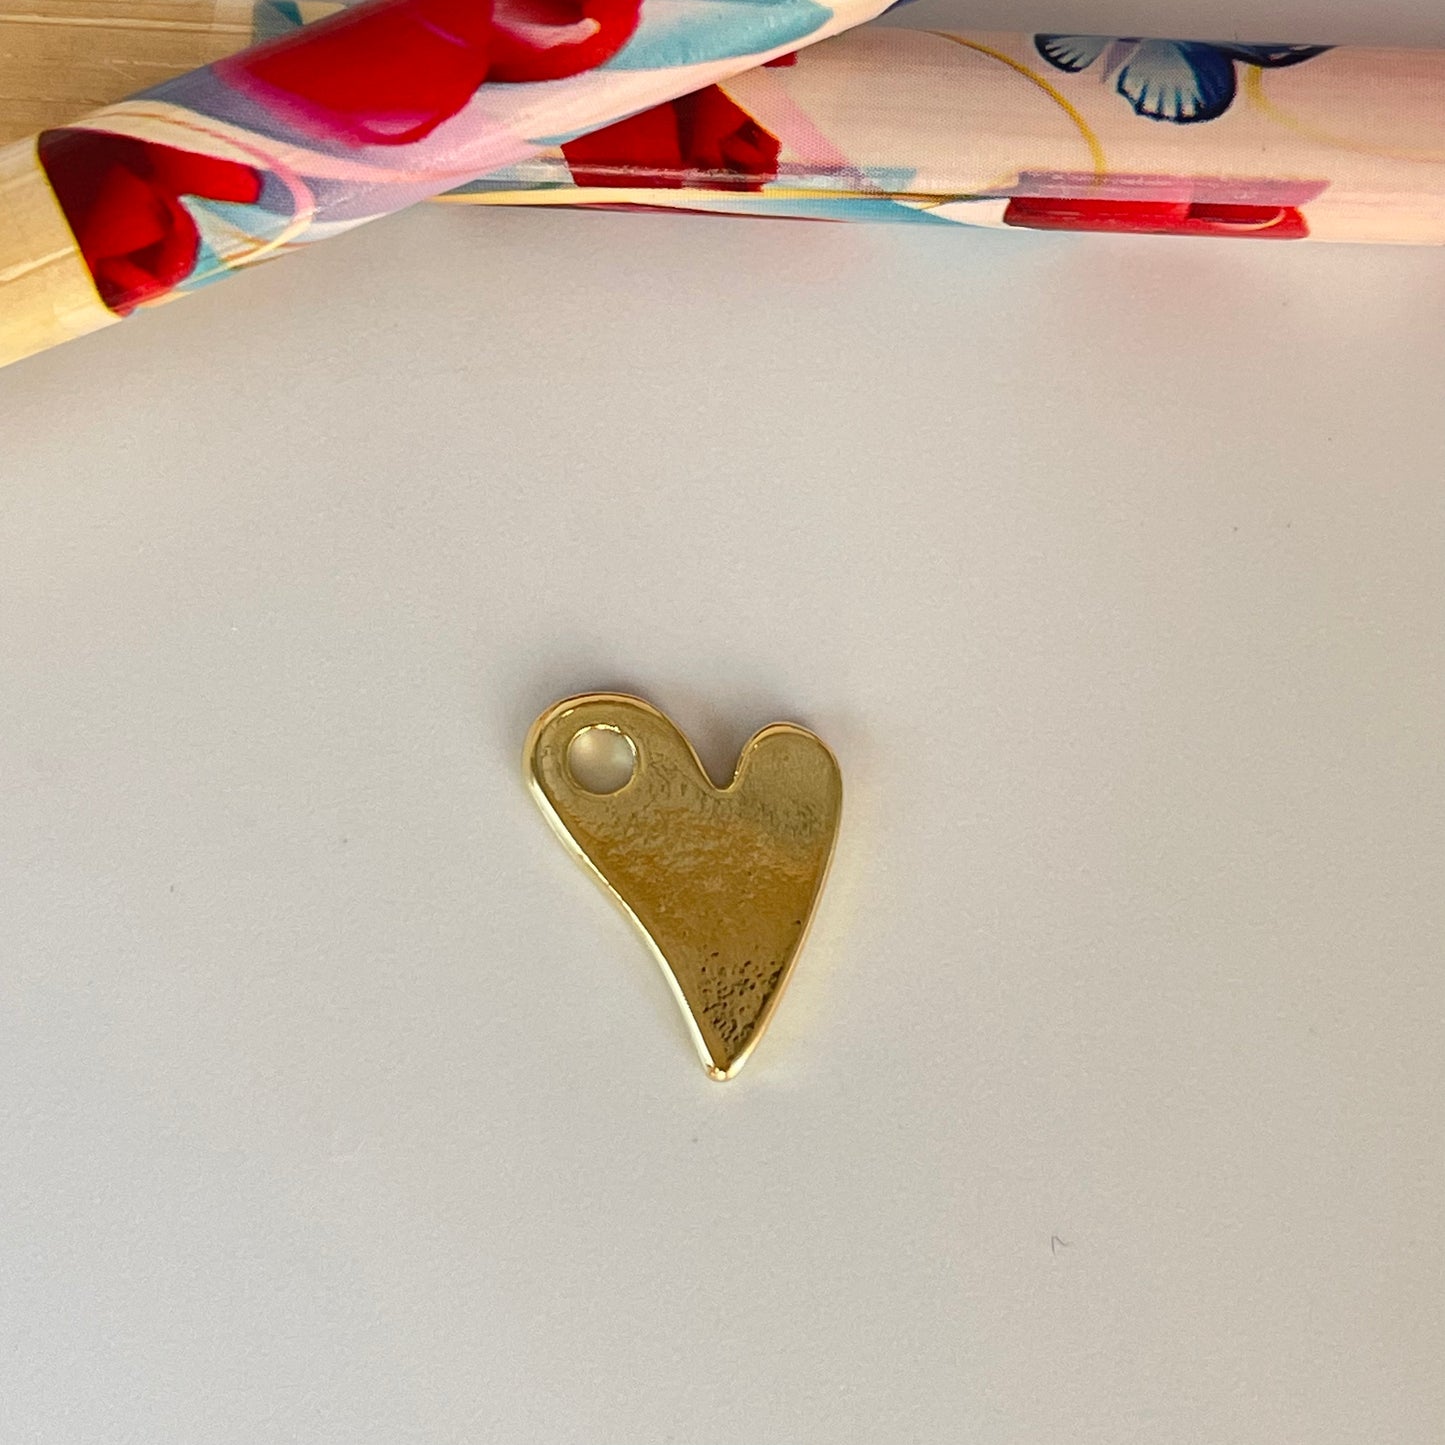 FO1124 Colgante Corazón ladeado con perforación lateral liso Tres tamaños L M y S Espesor 1.2 mm Figura Baño Oro Figuras Bañadas hecho de Bronce Bañado en Oro 18K Joyas Bañadas en Oro